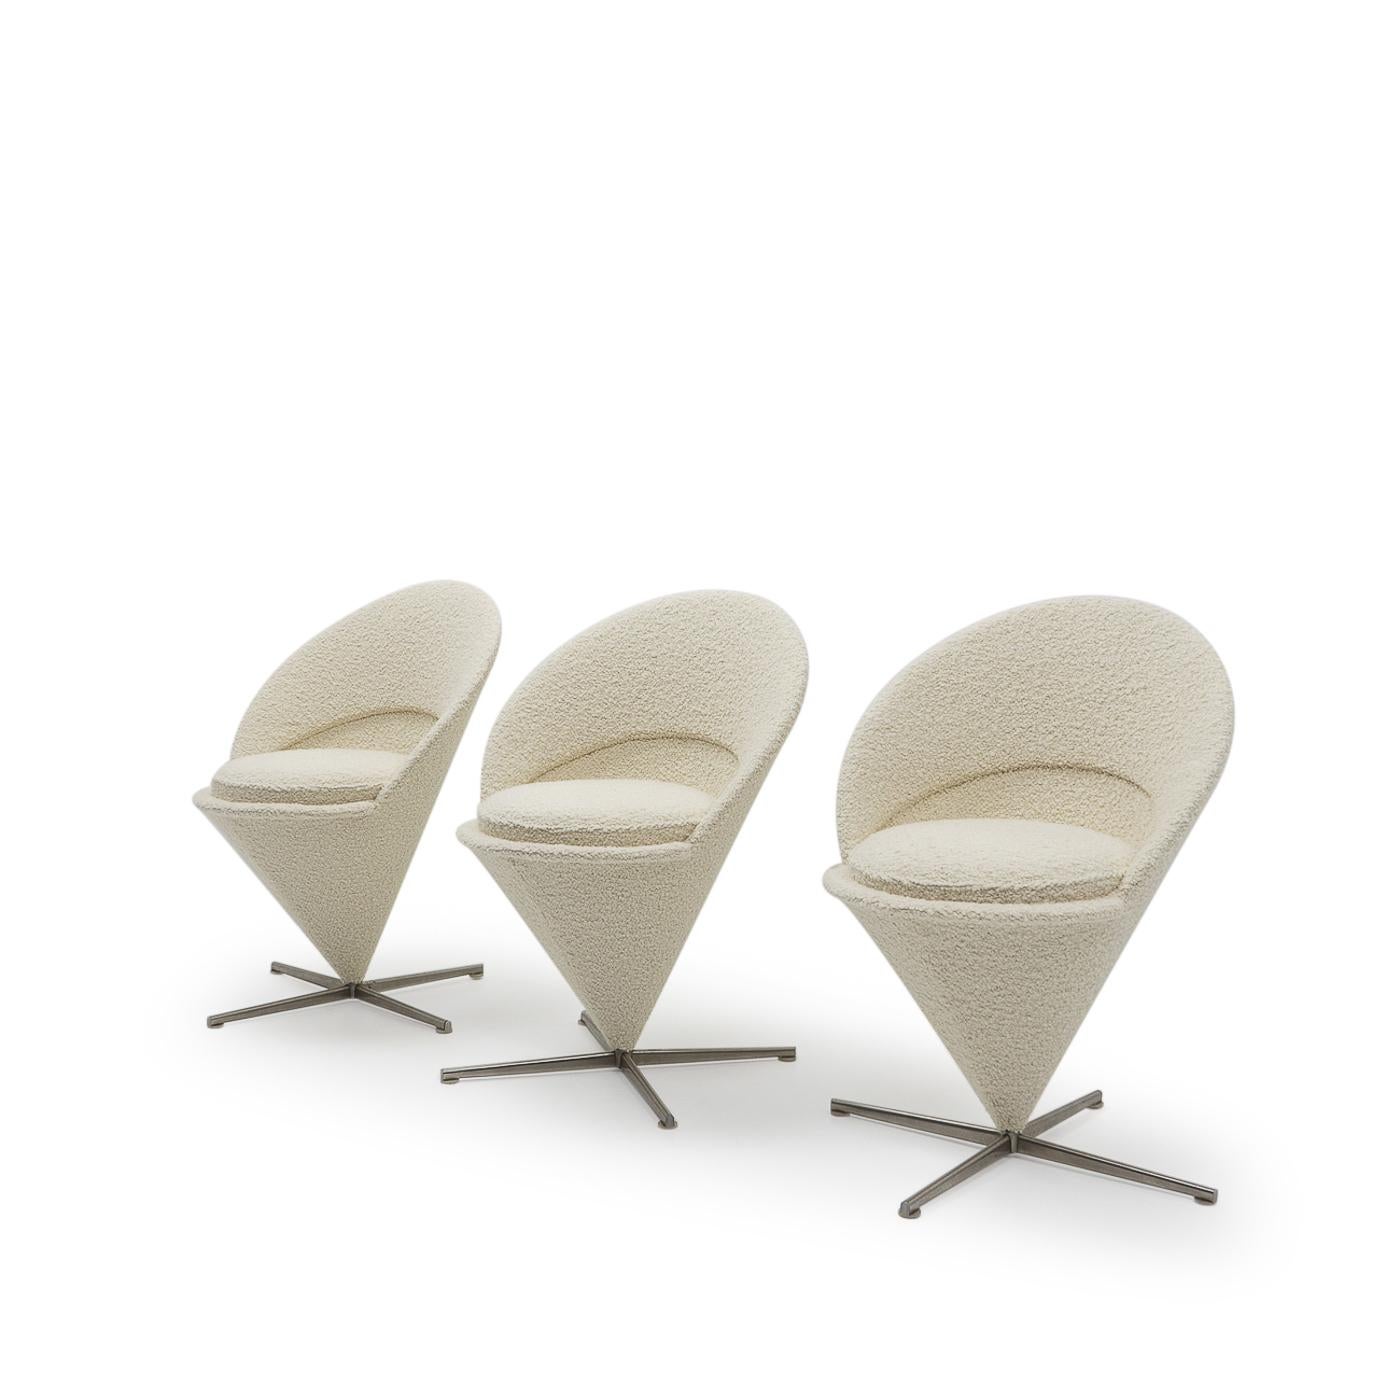 Ursprünglich von Verner Panton in den späten 1950er Jahren für den Einsatz in einem Restaurant entworfen, wurde der Cone Chair bald zu einem seiner bekanntesten Entwürfe;


Ob es die Schlichtheit der geometrischen Form, der geringe Platzbedarf oder